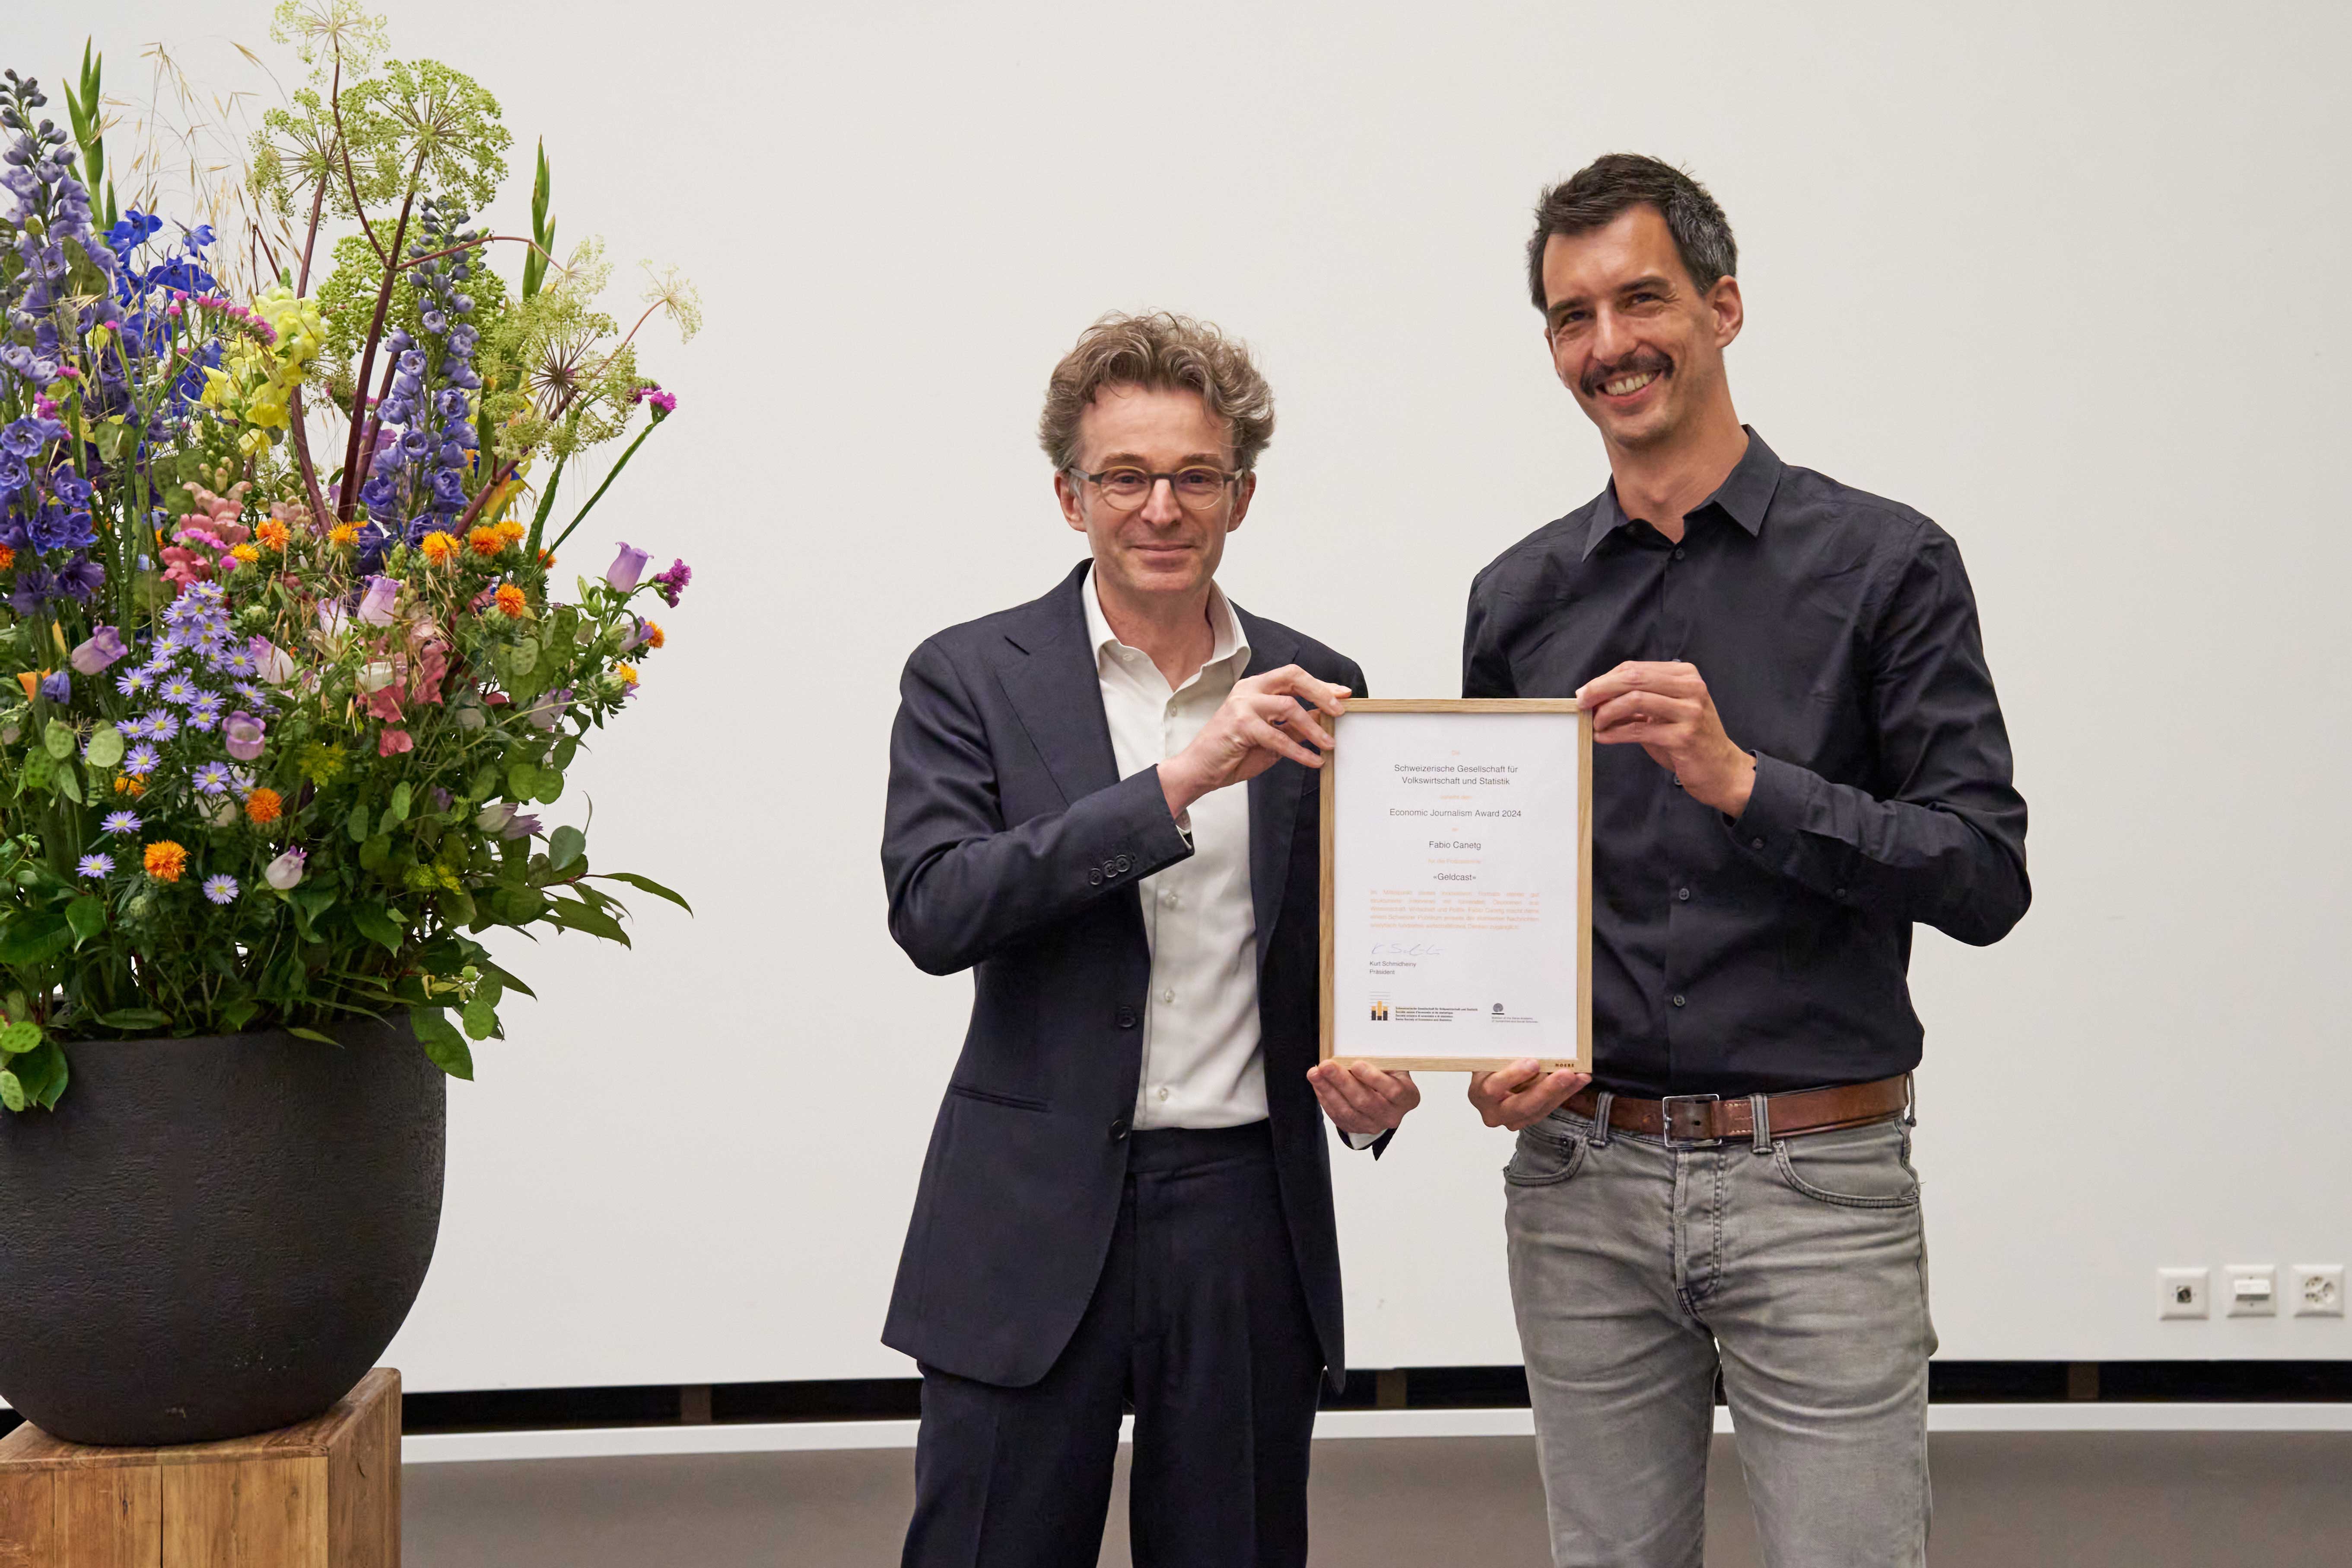 Fabio Canetg, Host des Geldcasts bei SWI swissinfo.ch wird mit dem "Economic Journalism Award" ausgezeichnet.